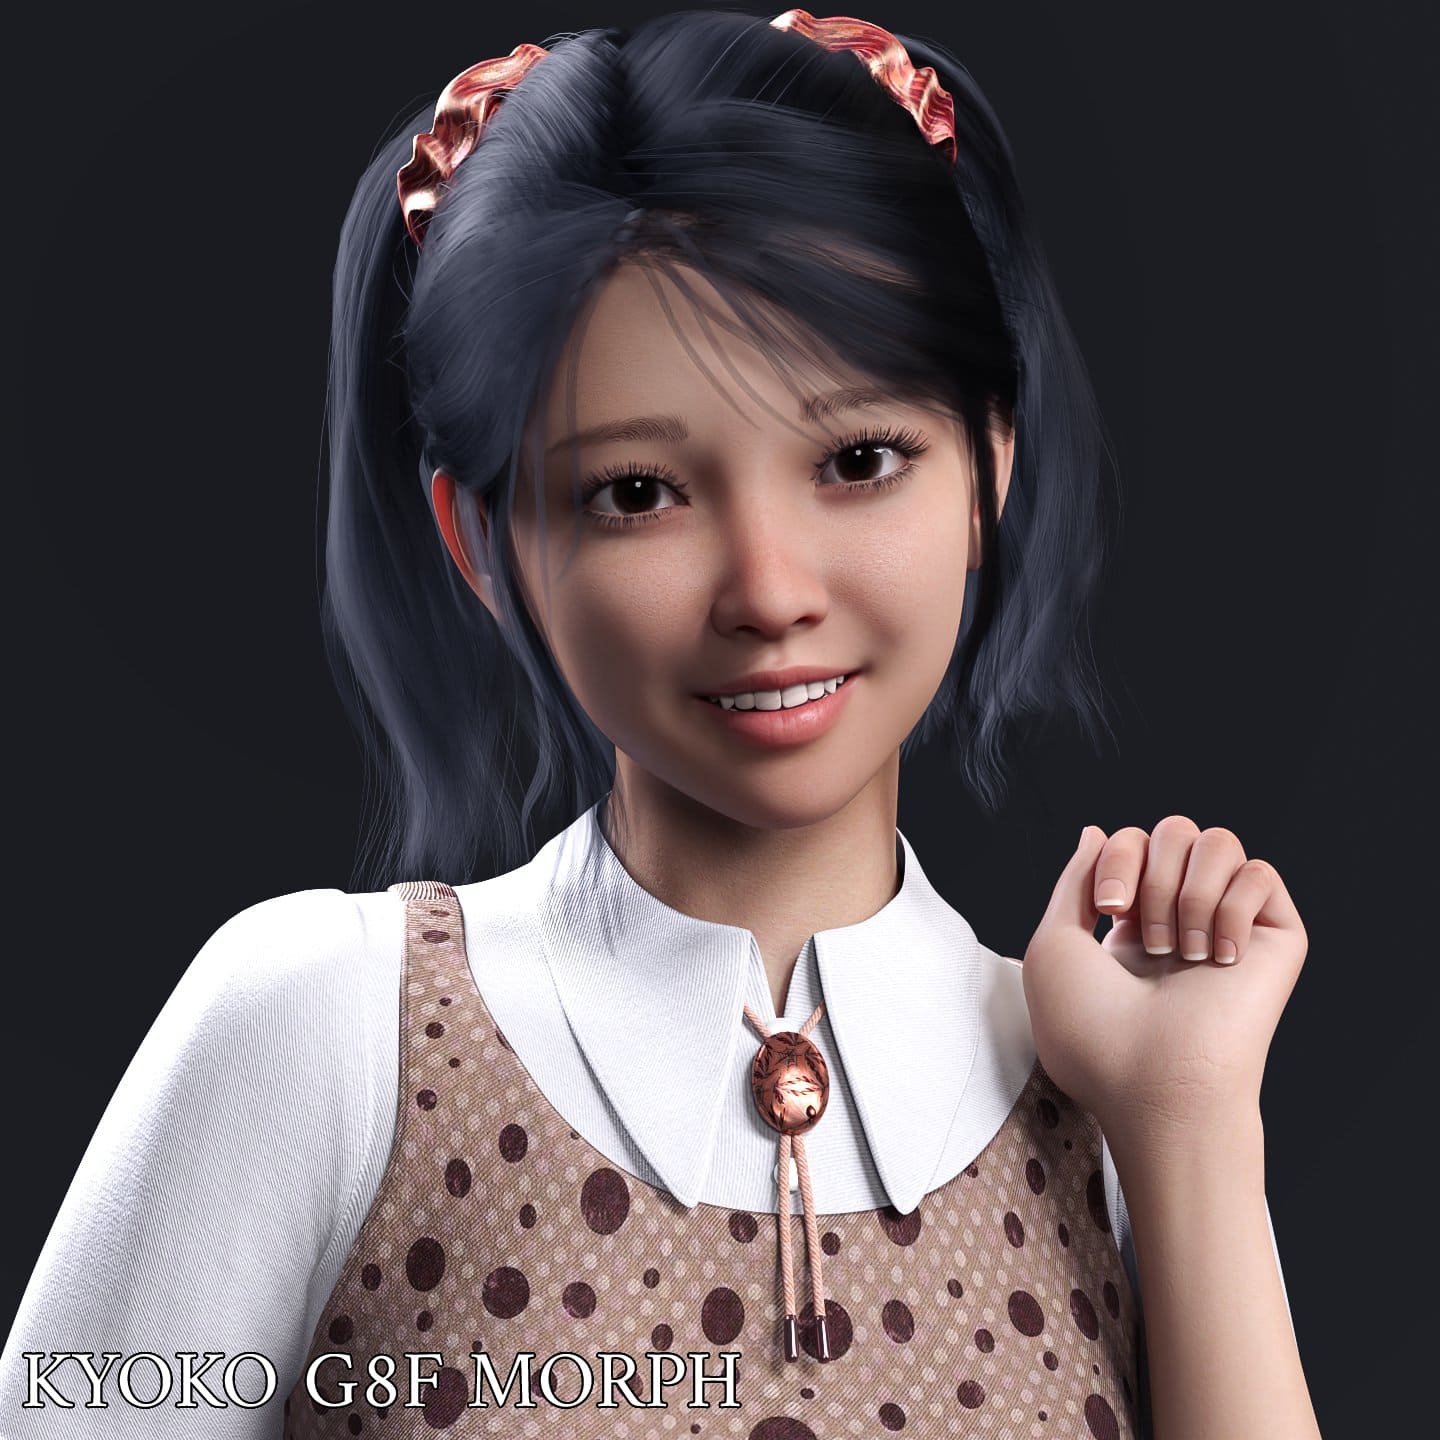 Kyoko Character Morph For Genesis 8 Females_DAZ3D下载站